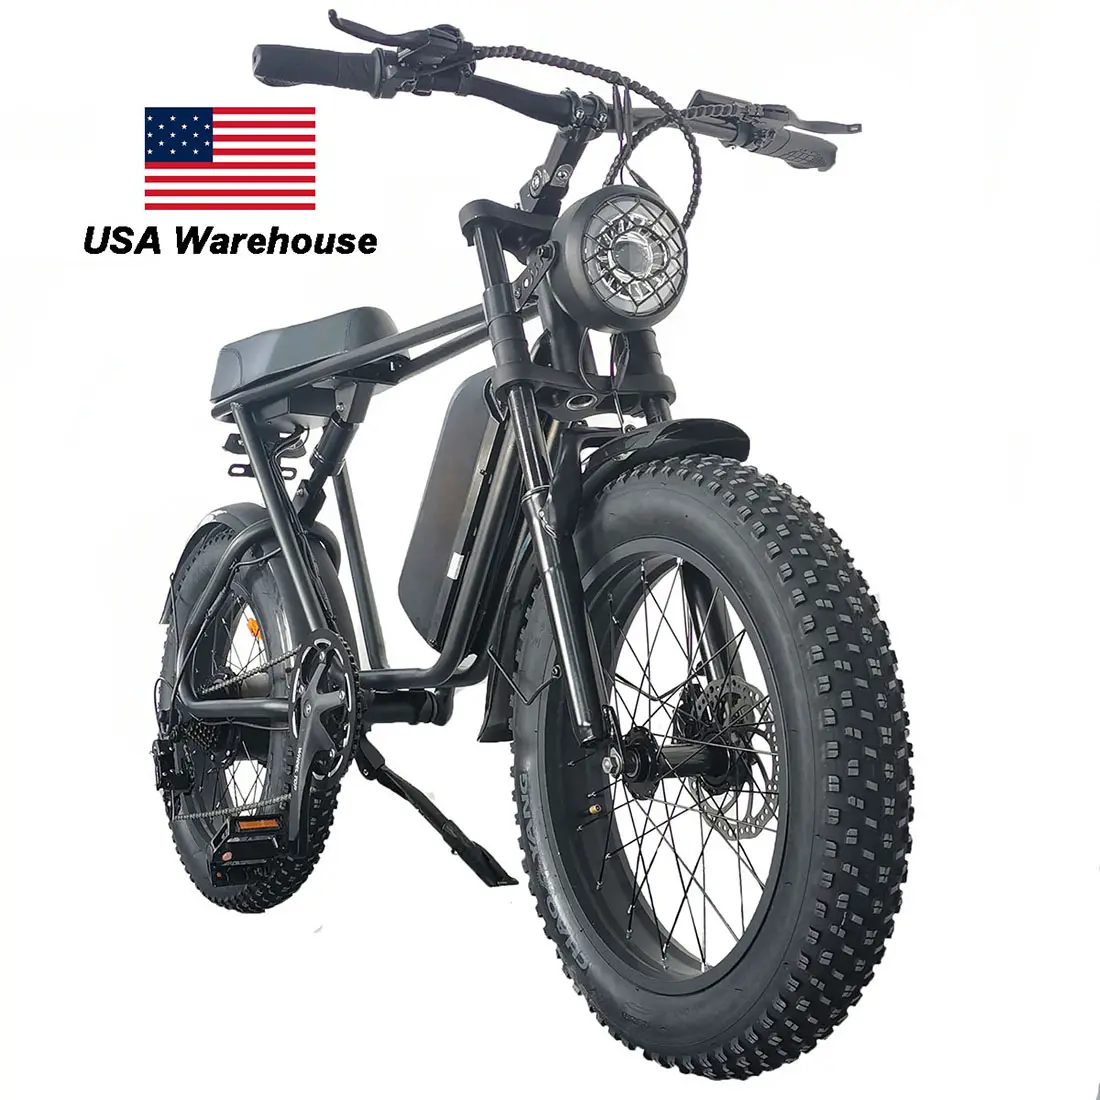 השעיה מלא שומן Ebike 1000W 48V 15Ah ארוך מושב מהיר חשמלי אופניים סופר אלקטרוני אופניים